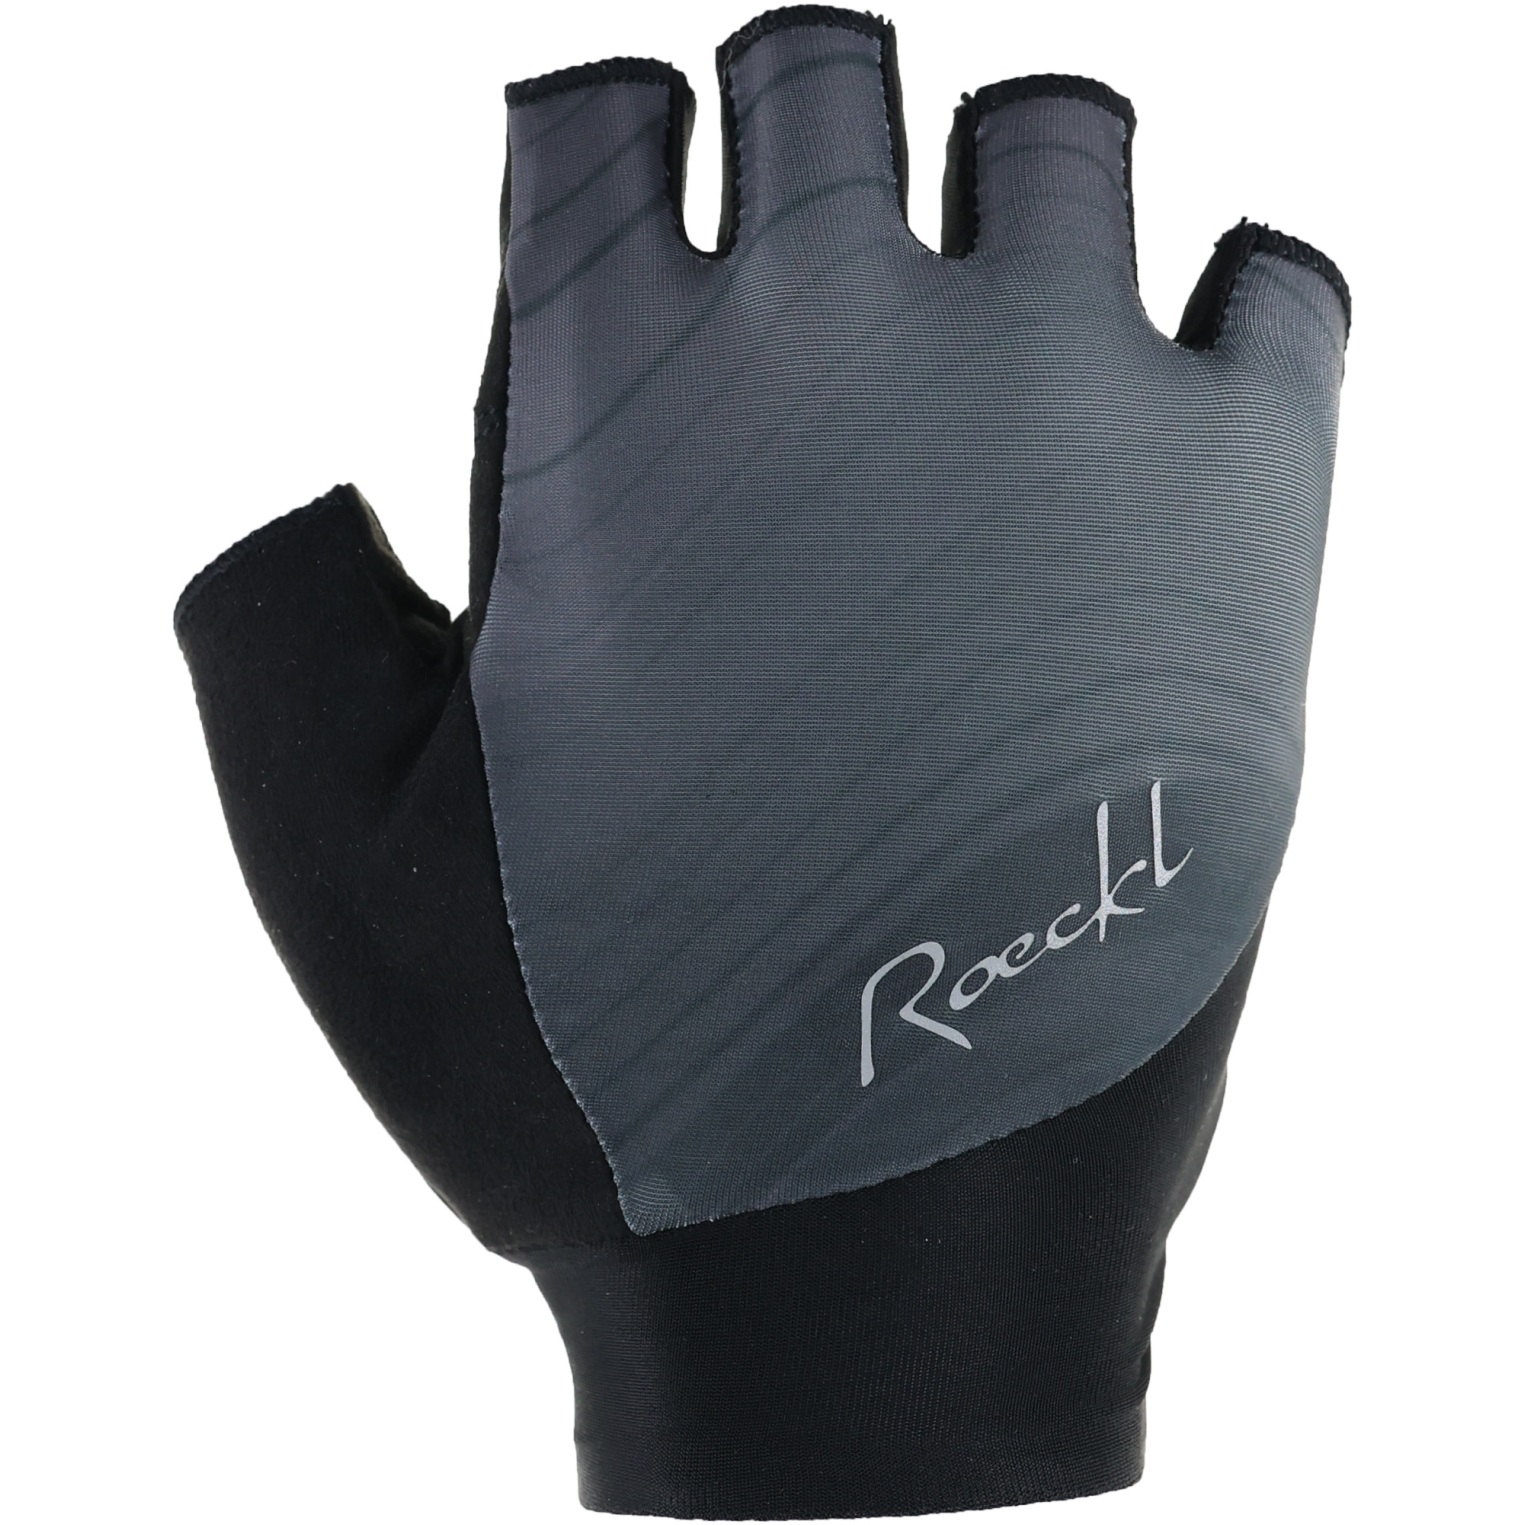 Produktbild von Roeckl Sports Danis 2 Fahrradhandschuhe Damen - black shadow 9600